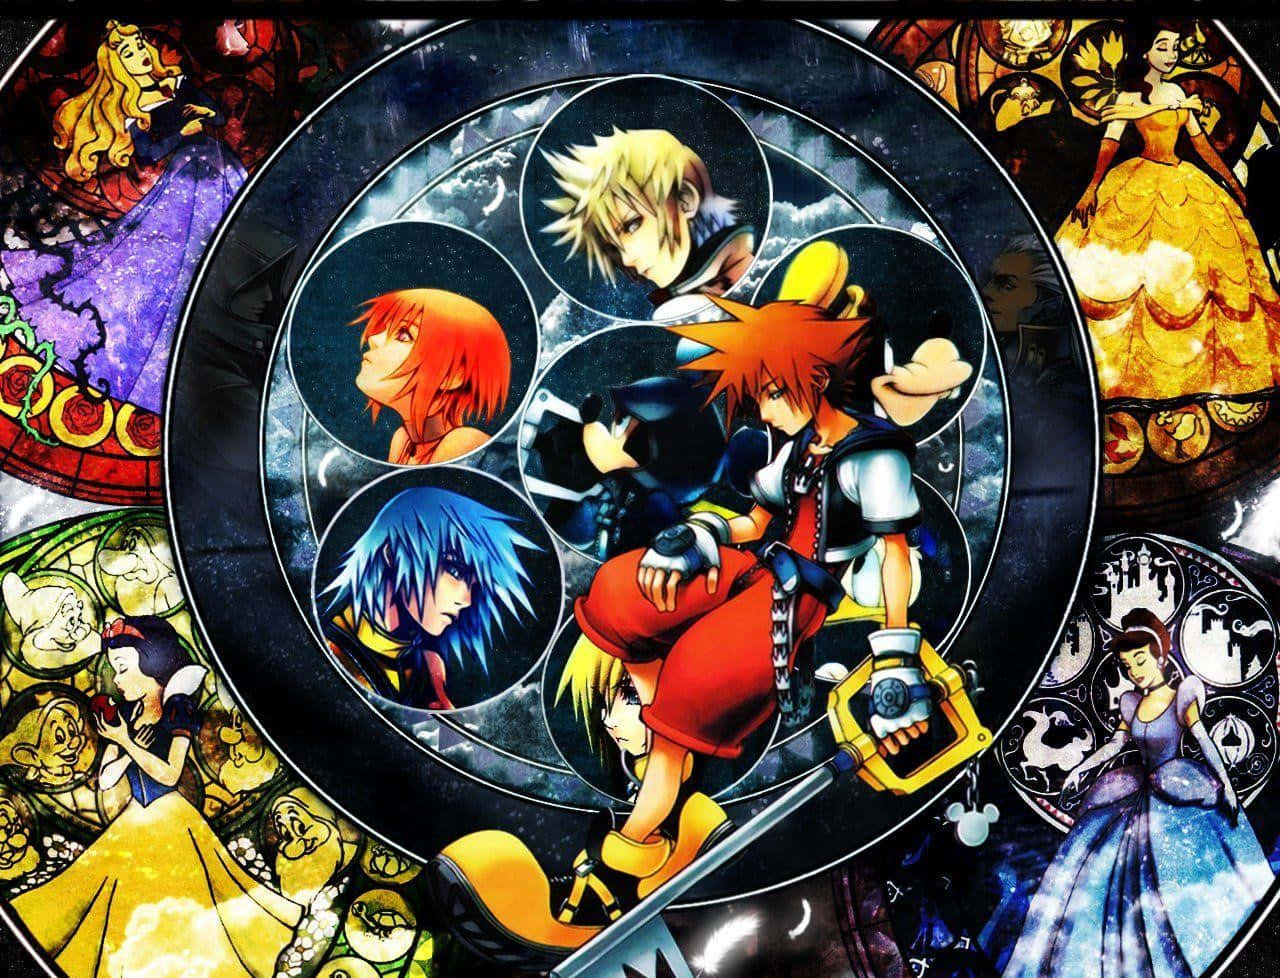 Rikuel Maestro De La Llave Espada En Kingdom Hearts. Fondo de pantalla